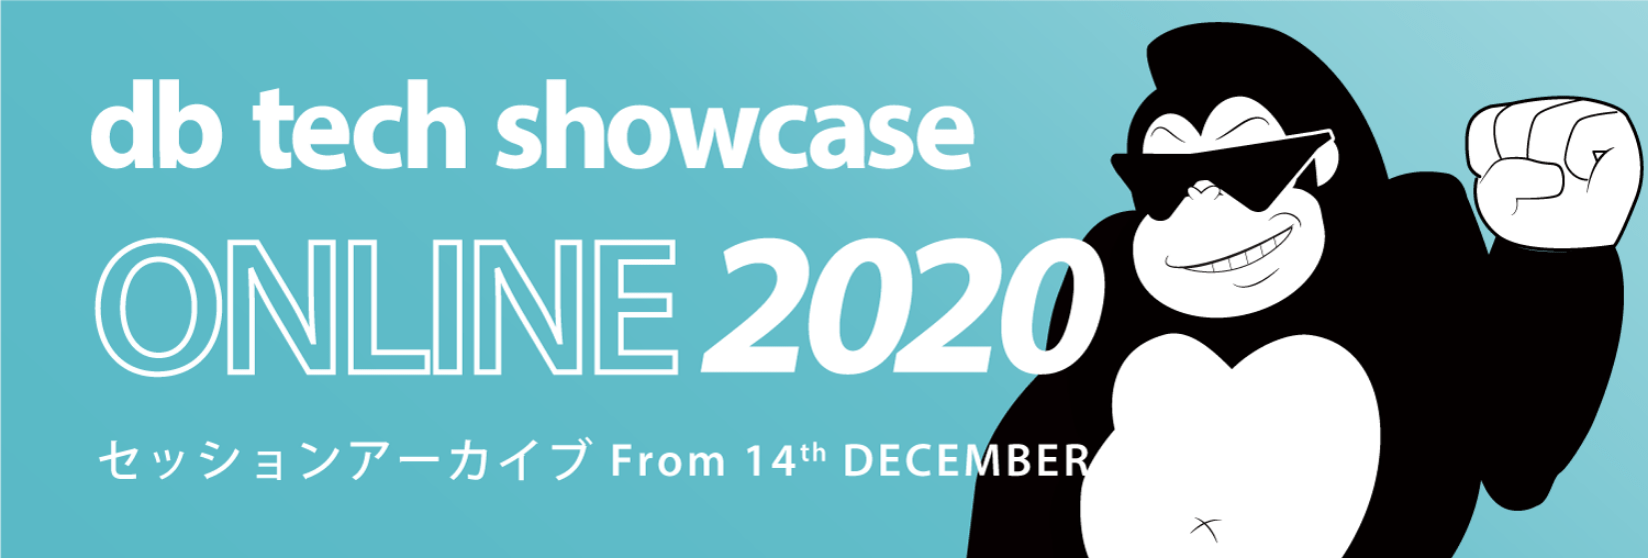 db tech showcase ONLINE 2020